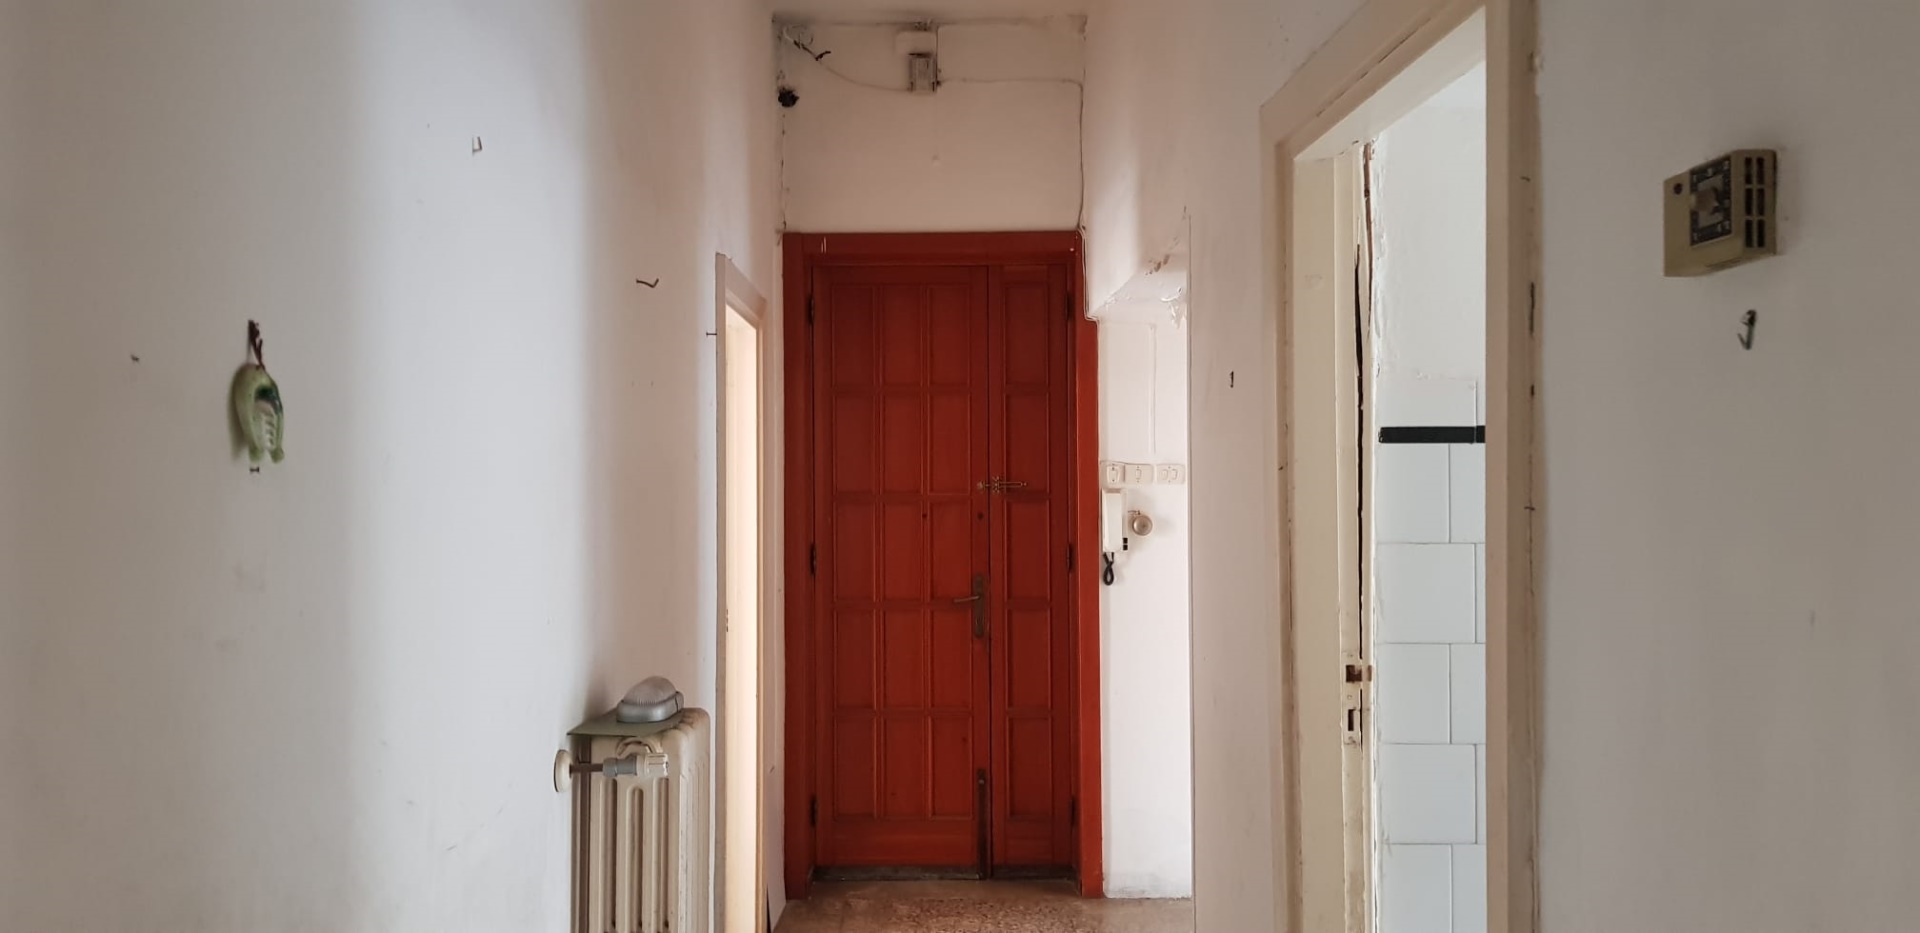 Appartamento in vendita a Novoli, 5 locali, prezzo € 39.000 | PortaleAgenzieImmobiliari.it